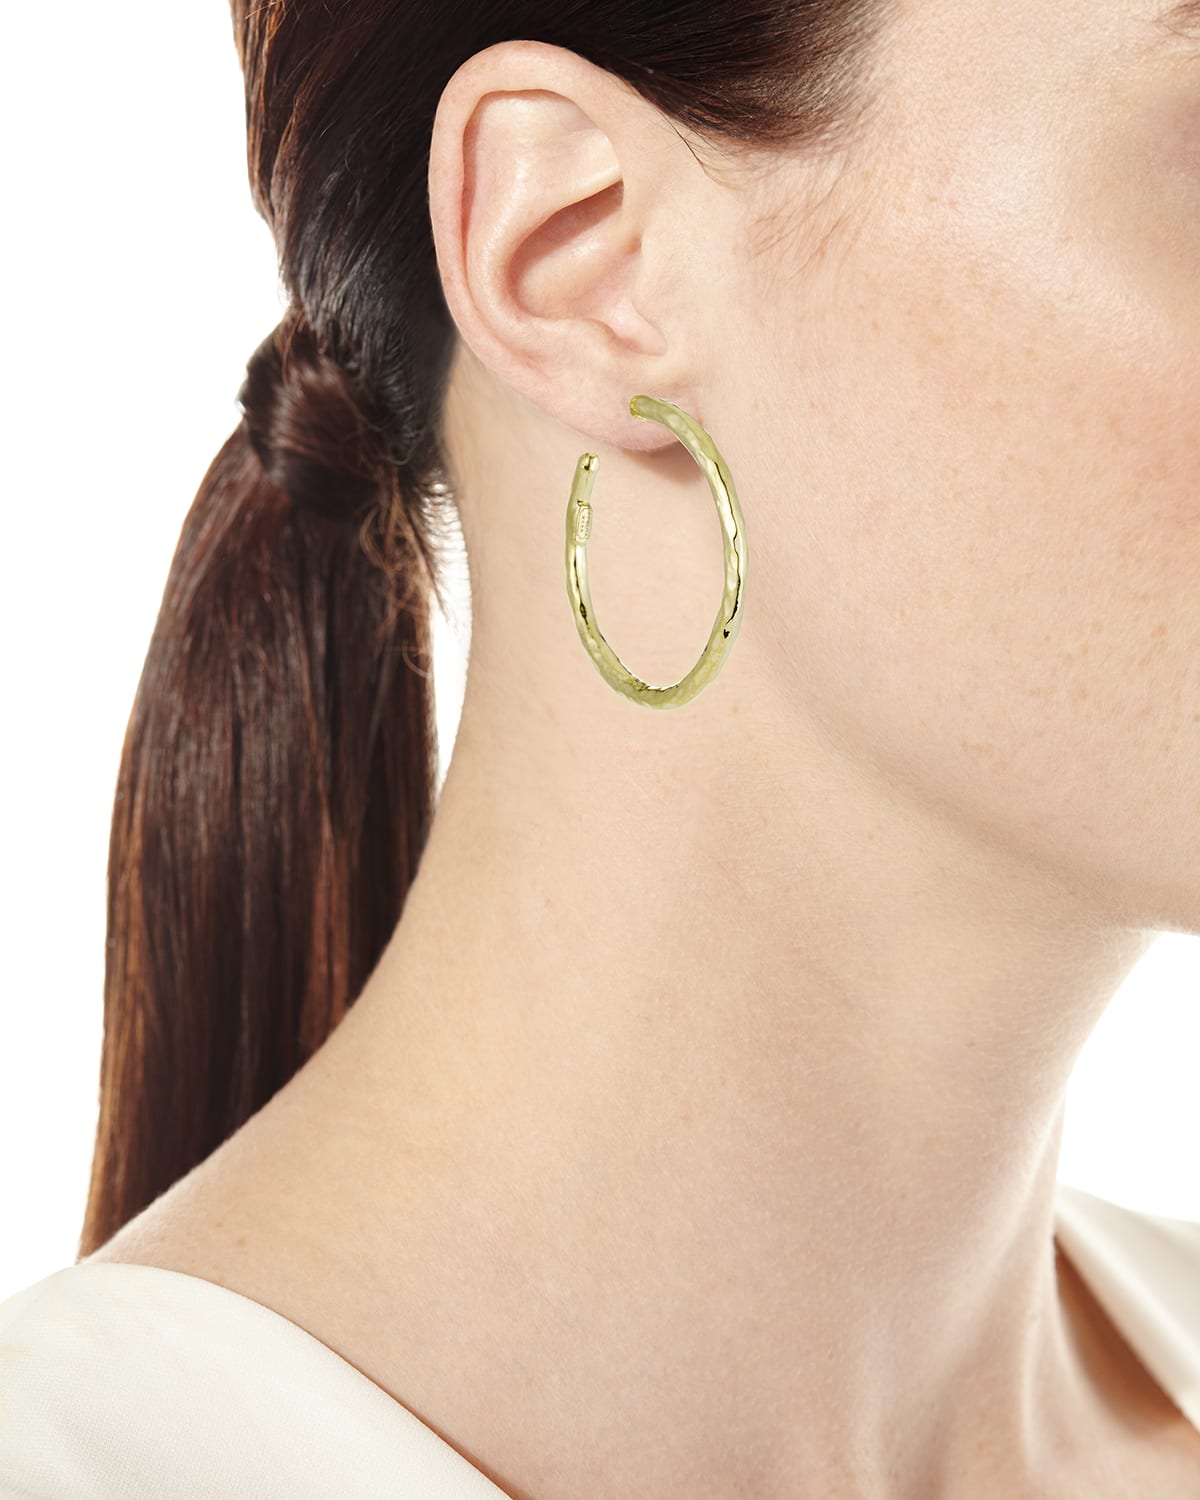 Ippolita Earrings | Extra Large Hoop Earrings in 18K Gold